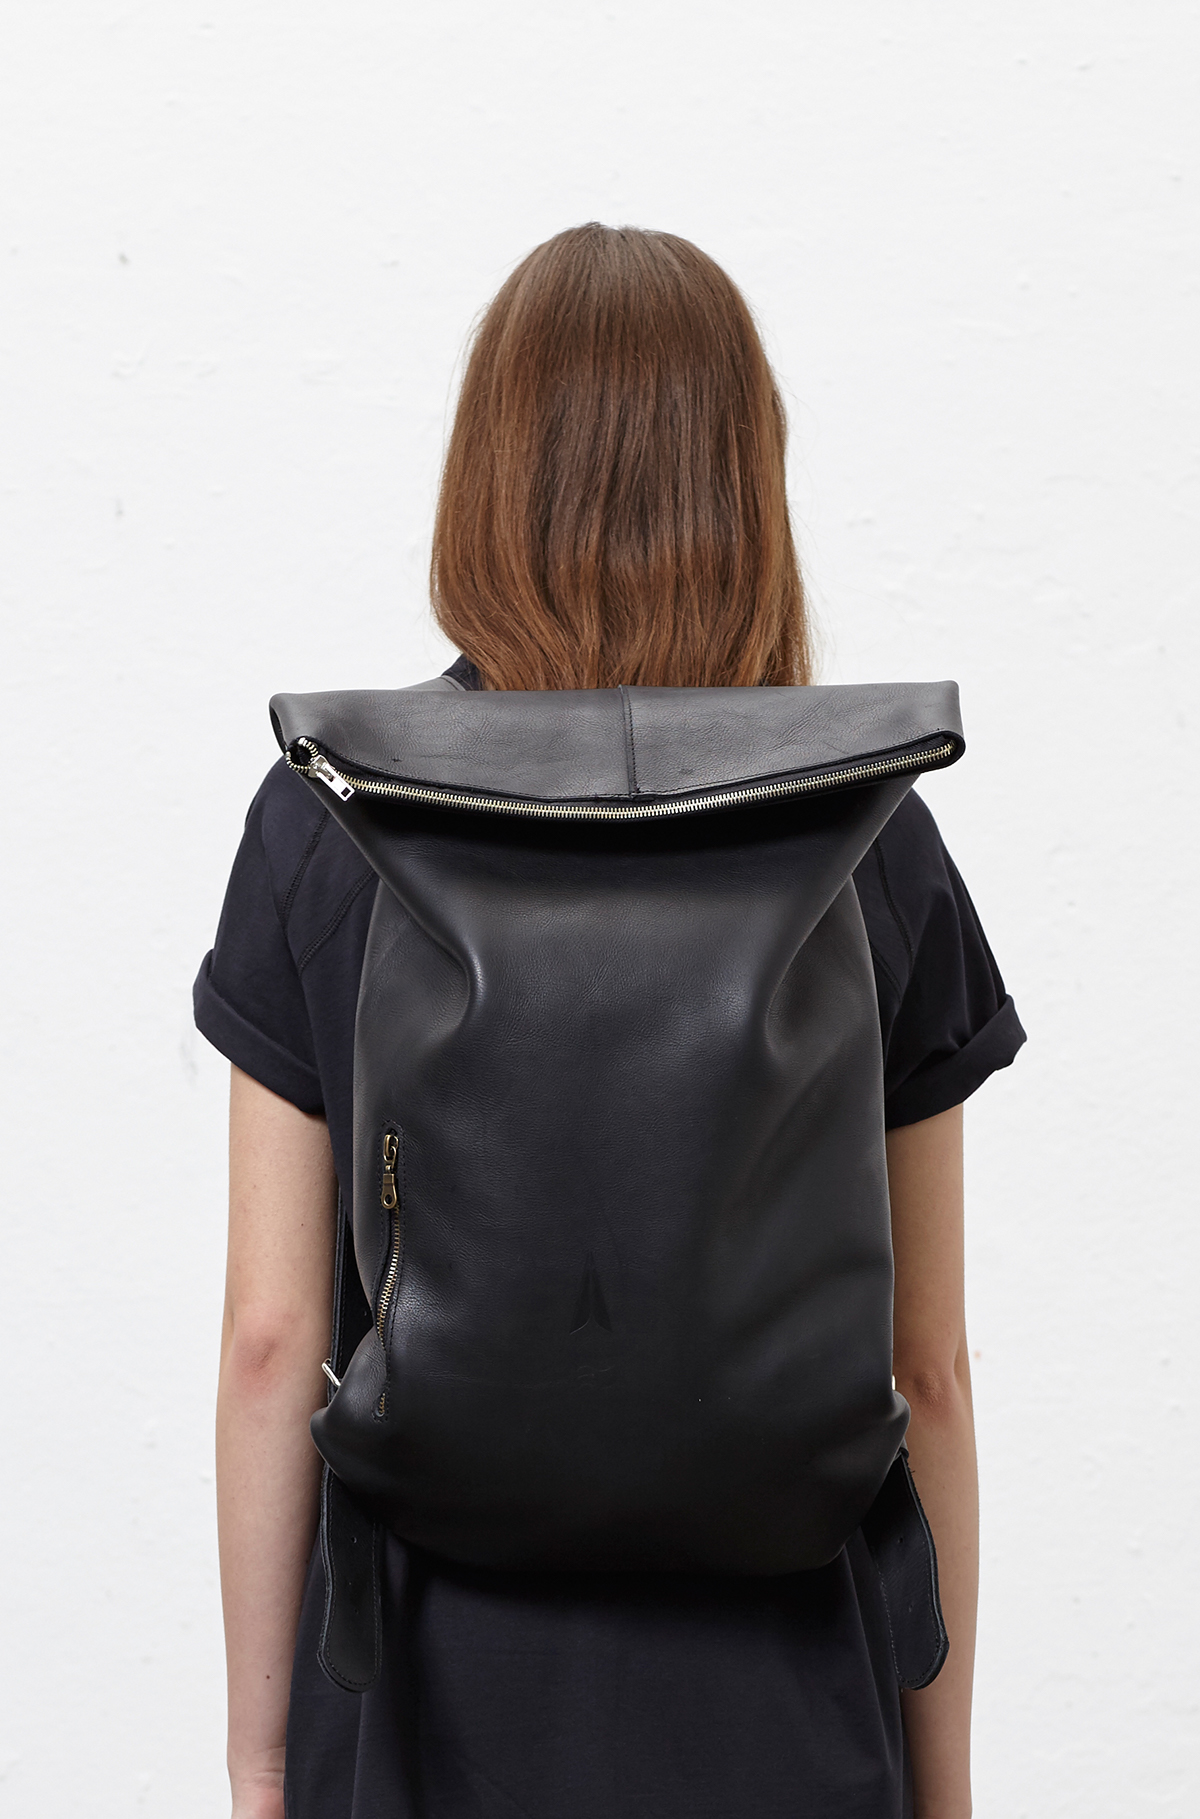 leather backpack bag productdesign industrialdesign